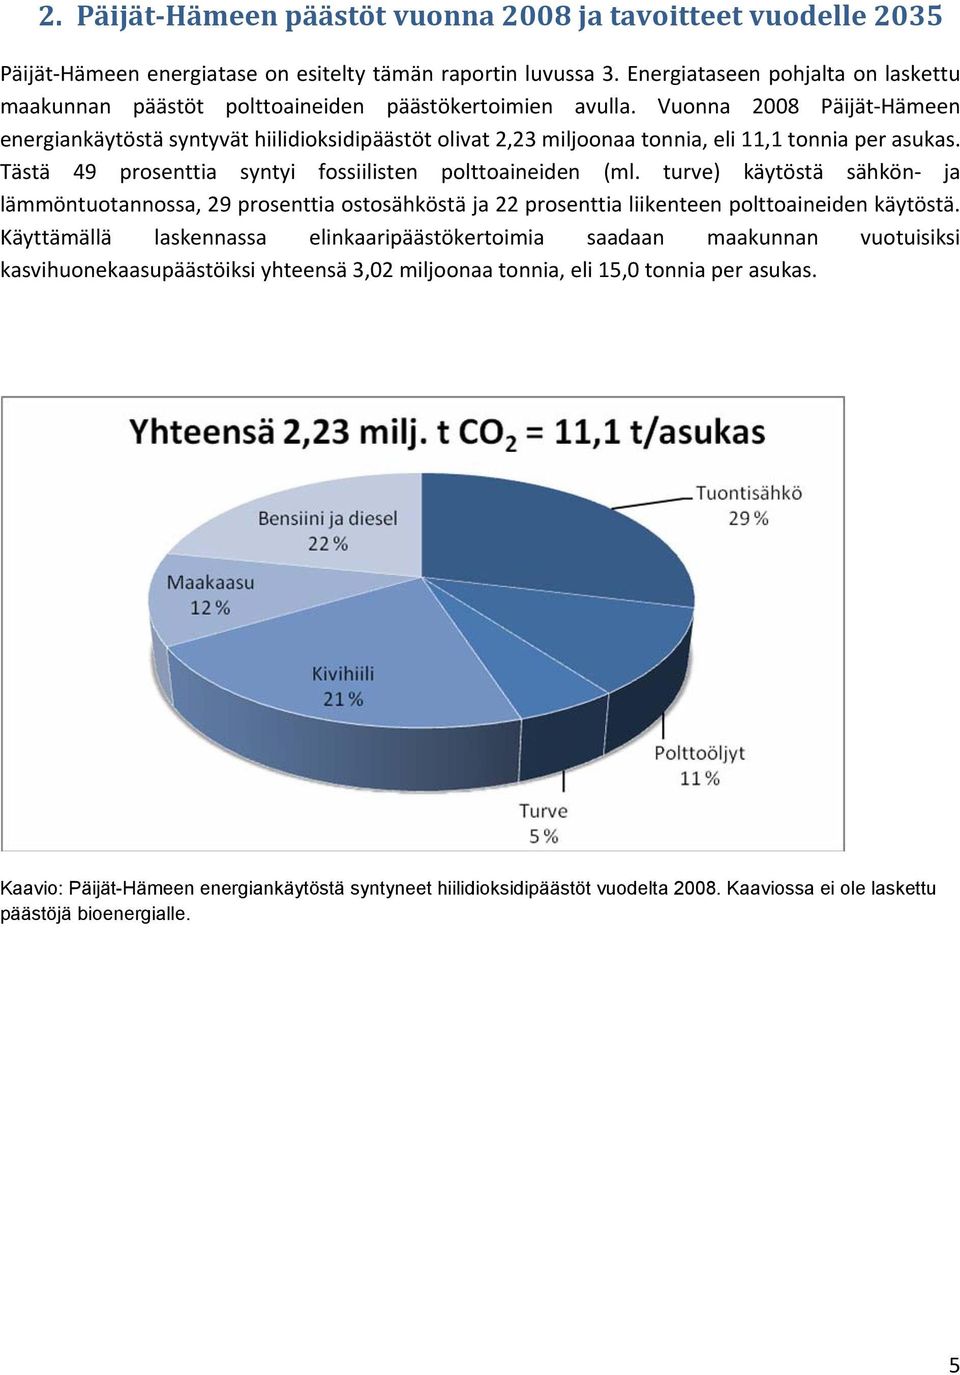 Vuonna 2008 Päijät Hämeen energiankäytöstä syntyvät hiilidioksidipäästöt olivat 2,23 miljoonaa tonnia, eli 11,1 tonnia per asukas. Tästä 49 prosenttia syntyi fossiilisten polttoaineiden (ml.